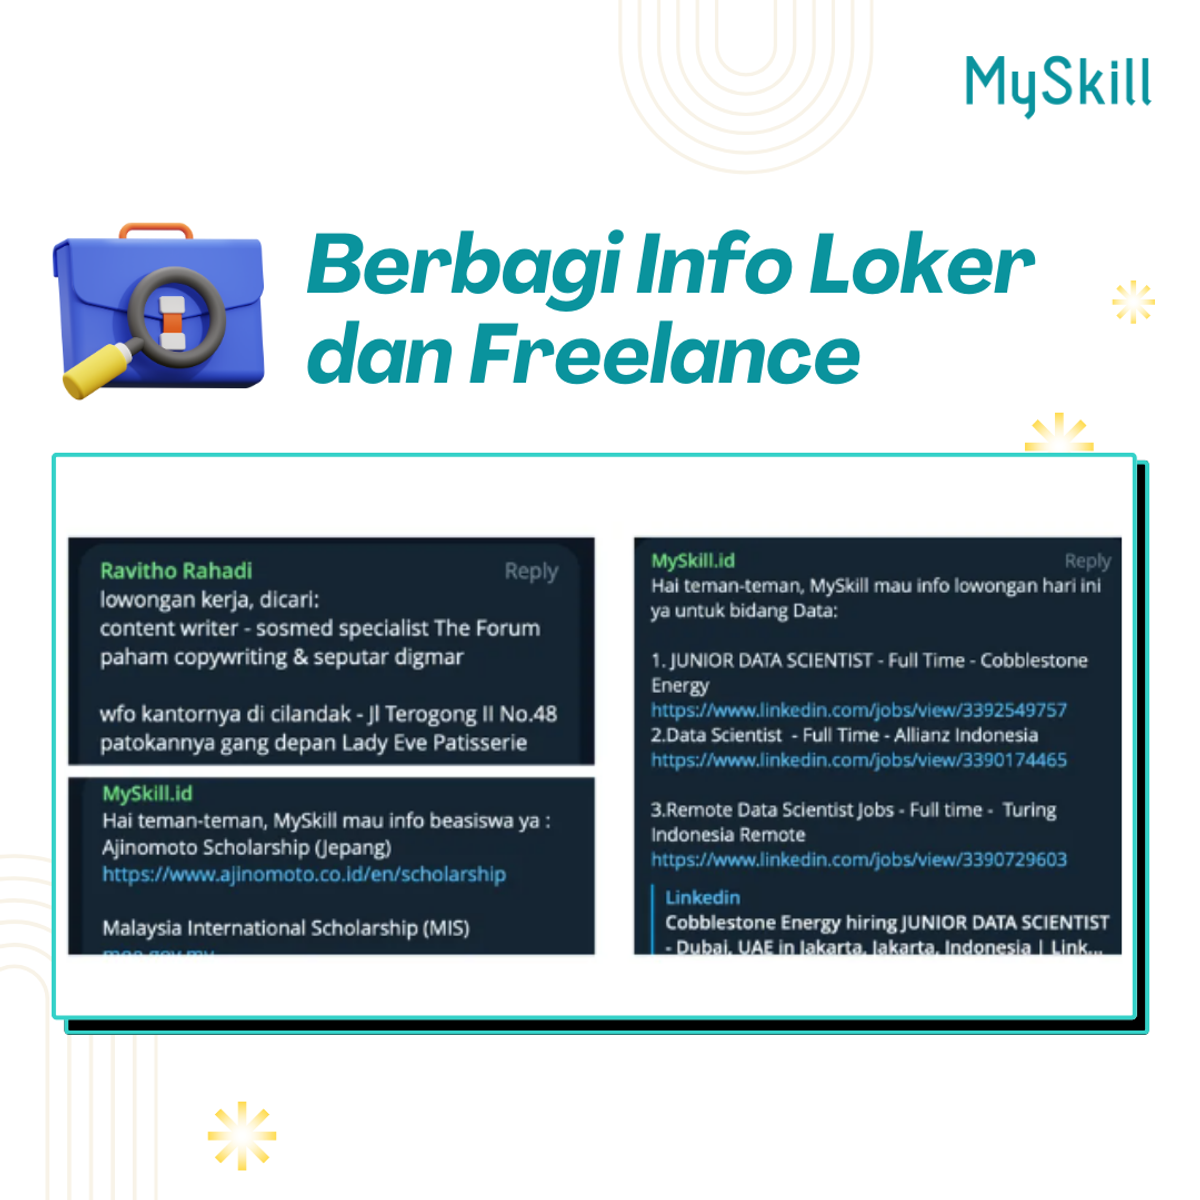 Berbagi Info Loker & Freelance